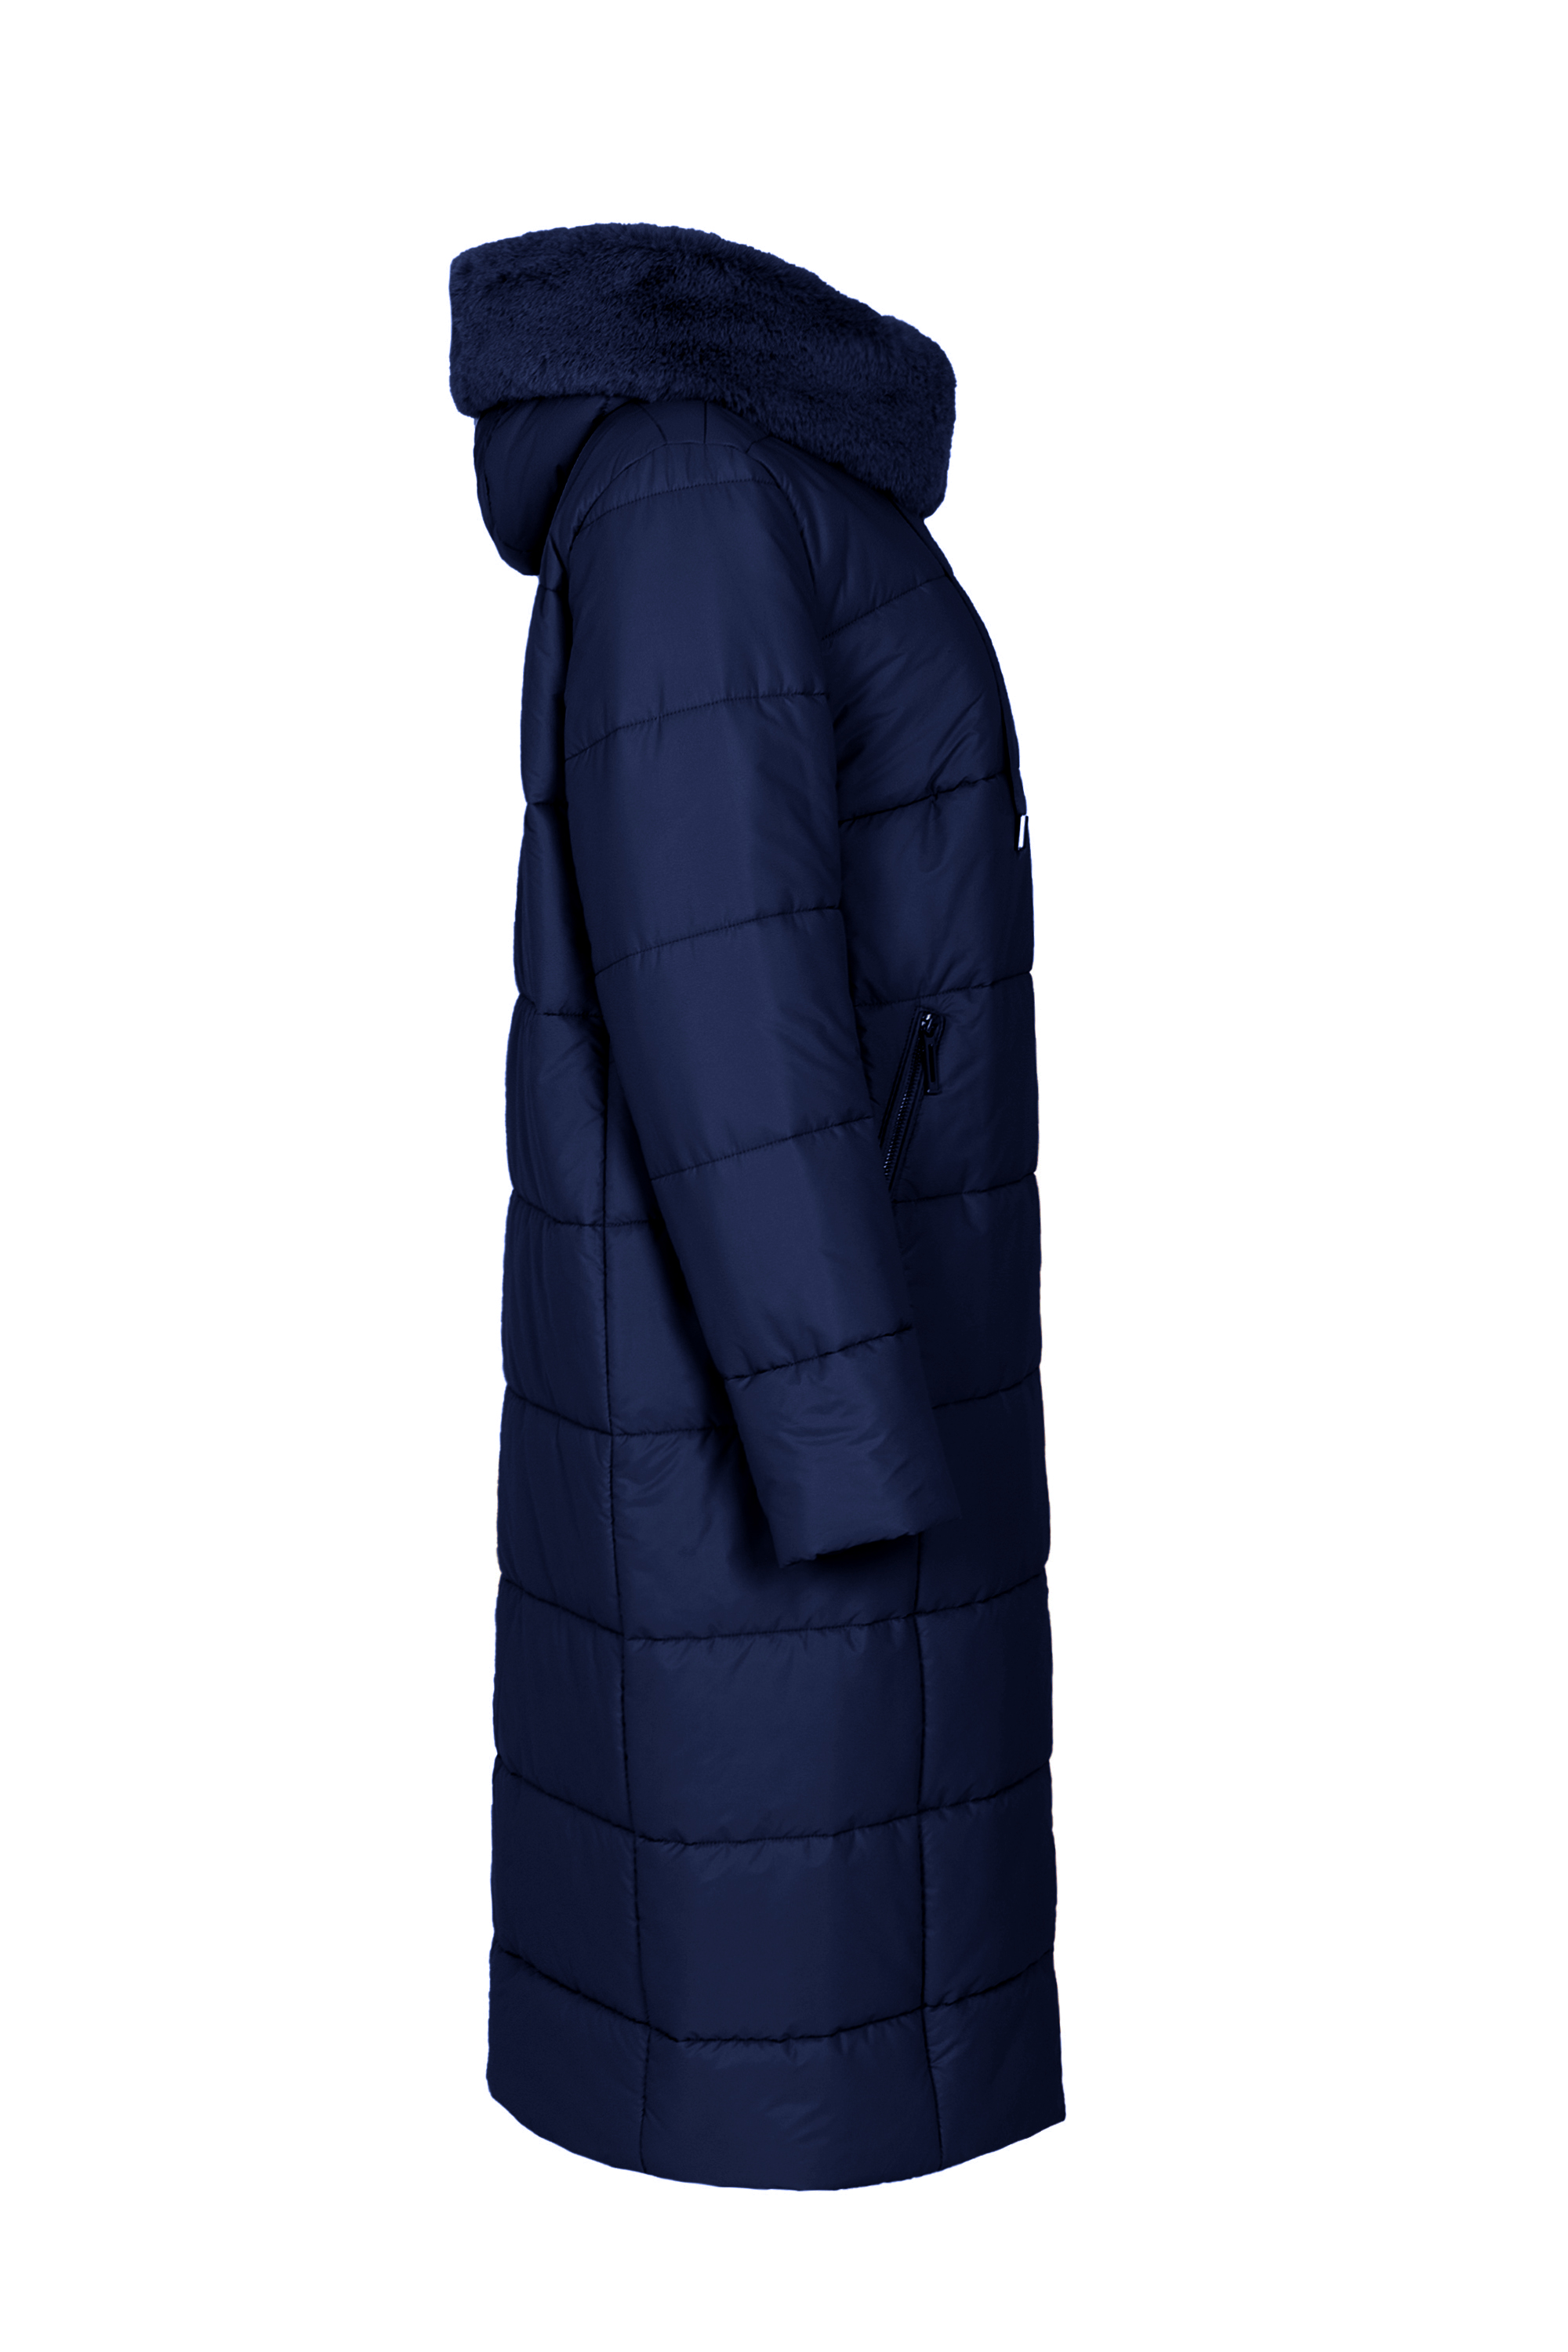 Пальто женское плащевое утепленное 5S-13062-1. Фото 2.